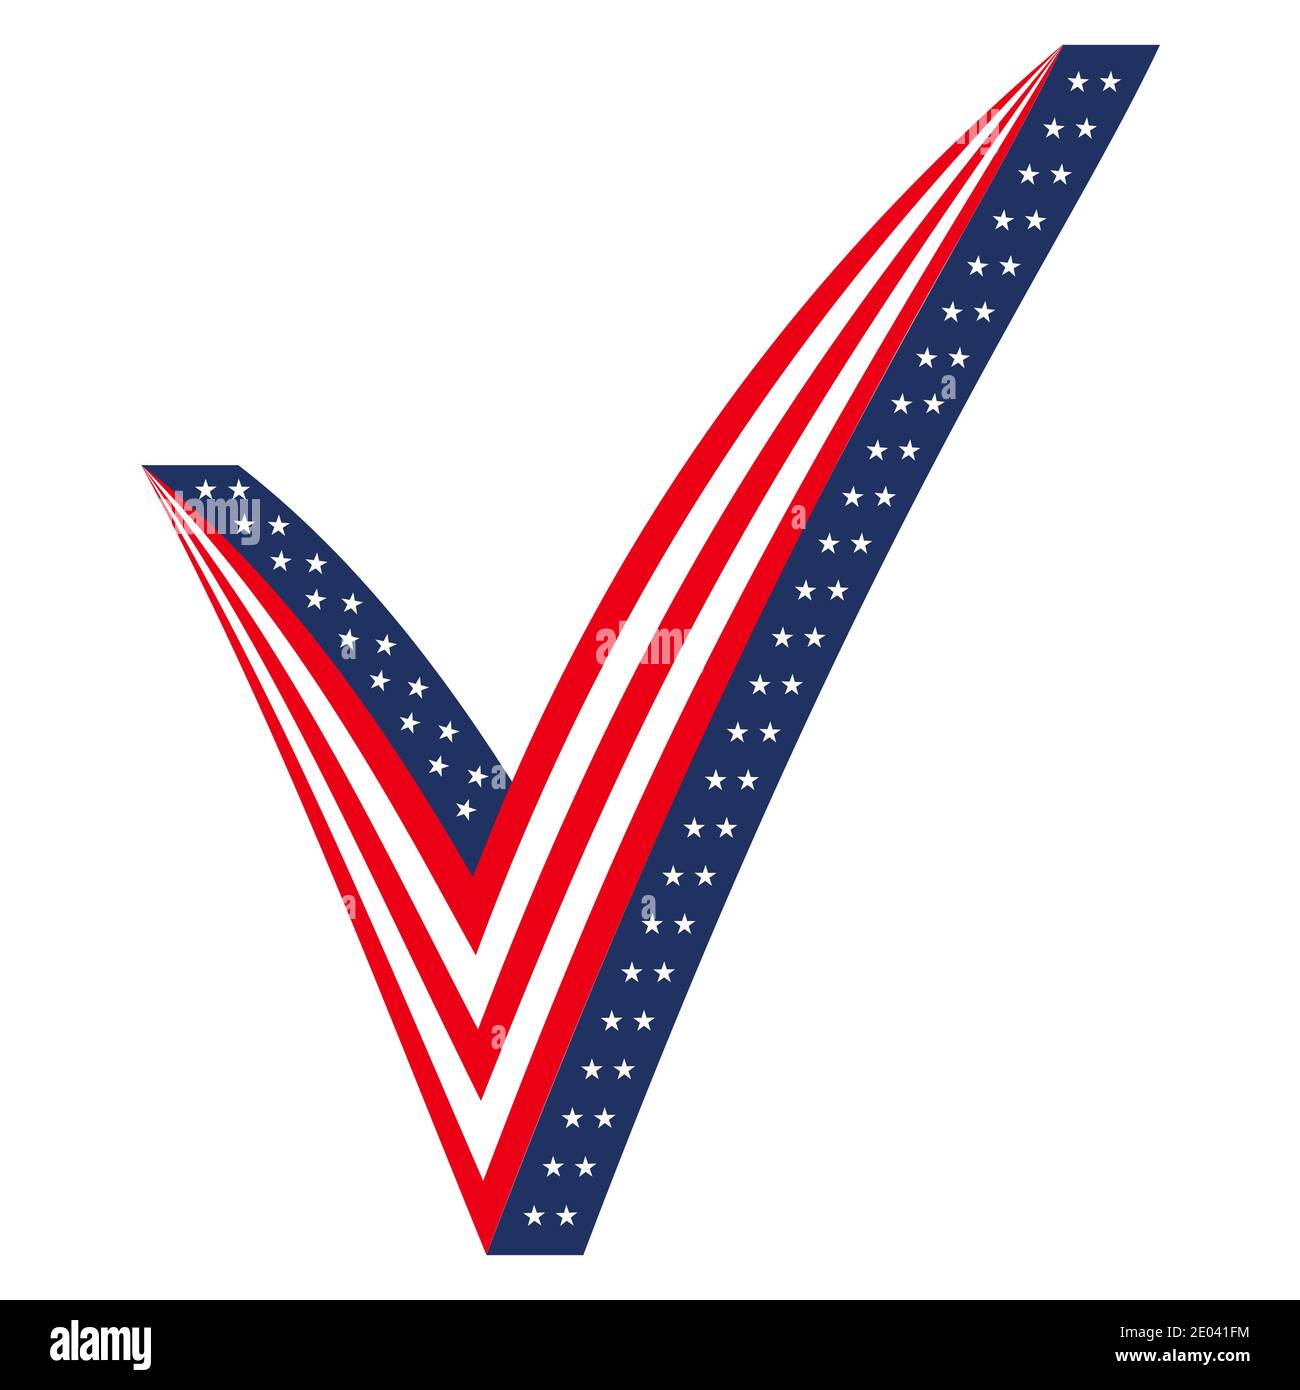 3D marque de contrôle stylisée comme drapeau des États-Unis, icône élections votant Président Parlement, vecteur de vote aux élections de 2020 Illustration de Vecteur